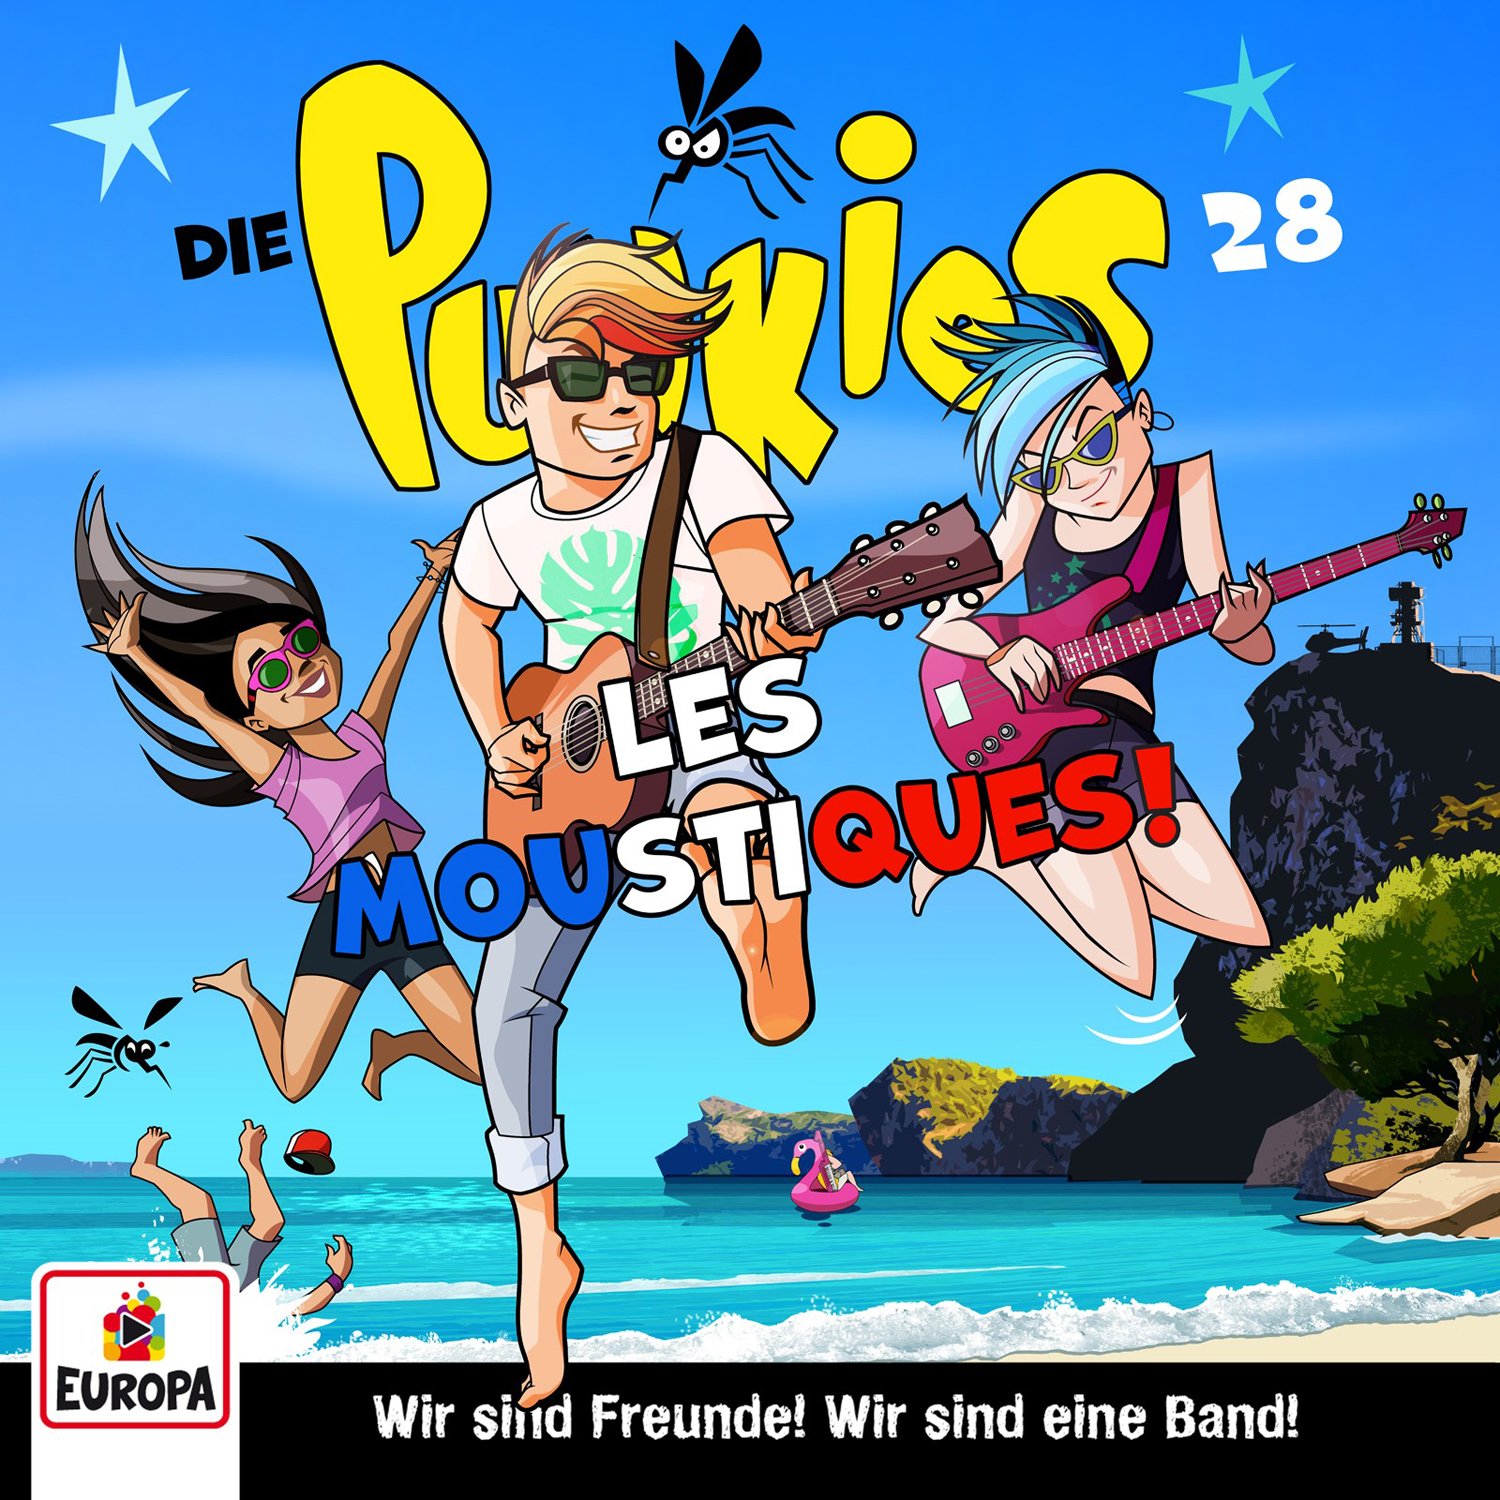 Die Punkies  - Les Moustiques!